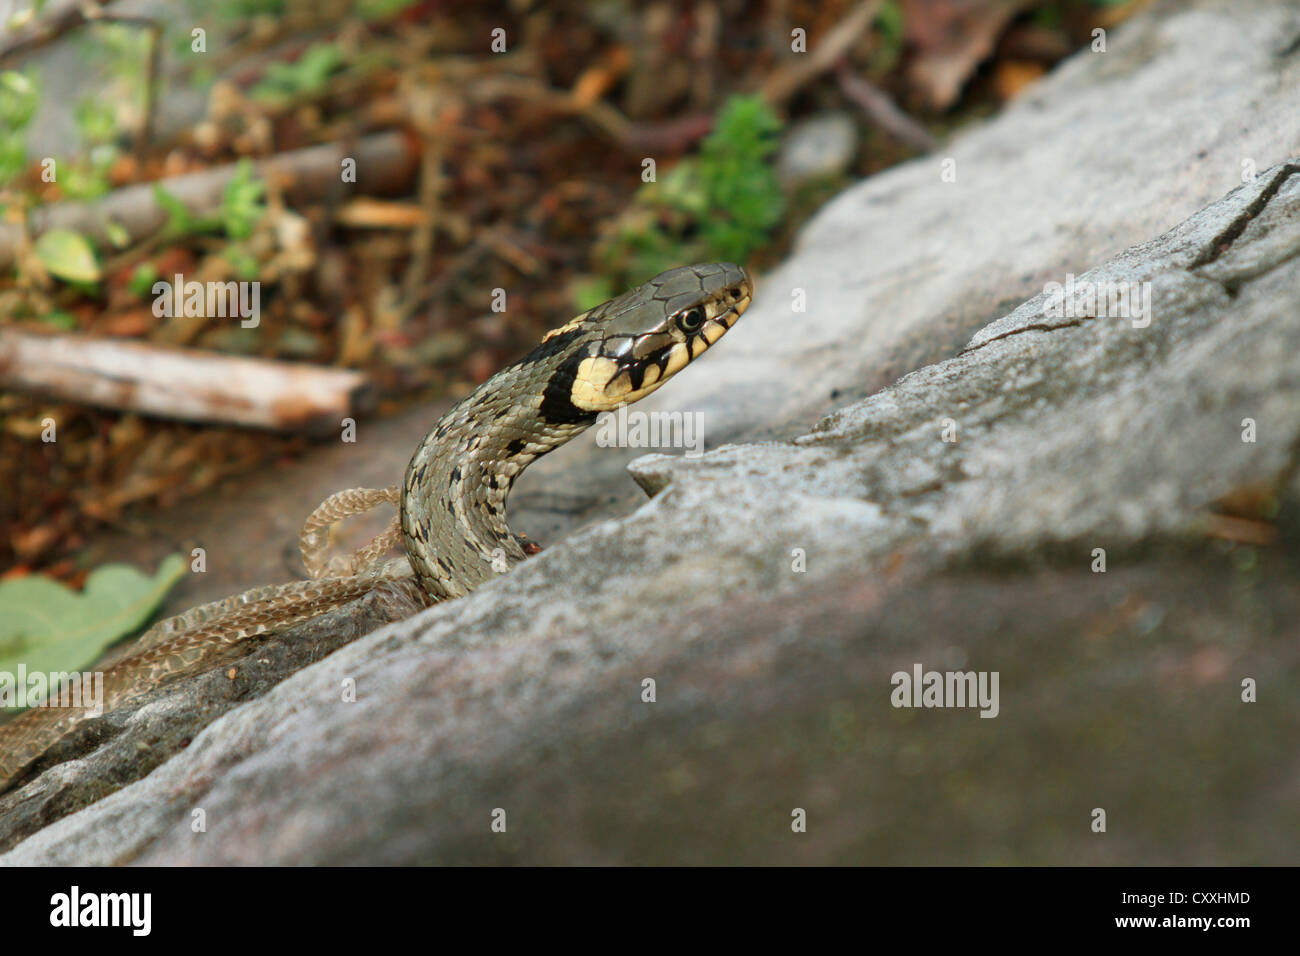 Grass snake (Natrix natrix) with shed snake skin, Lake Balaton, Hungary, Europe Stock Photo